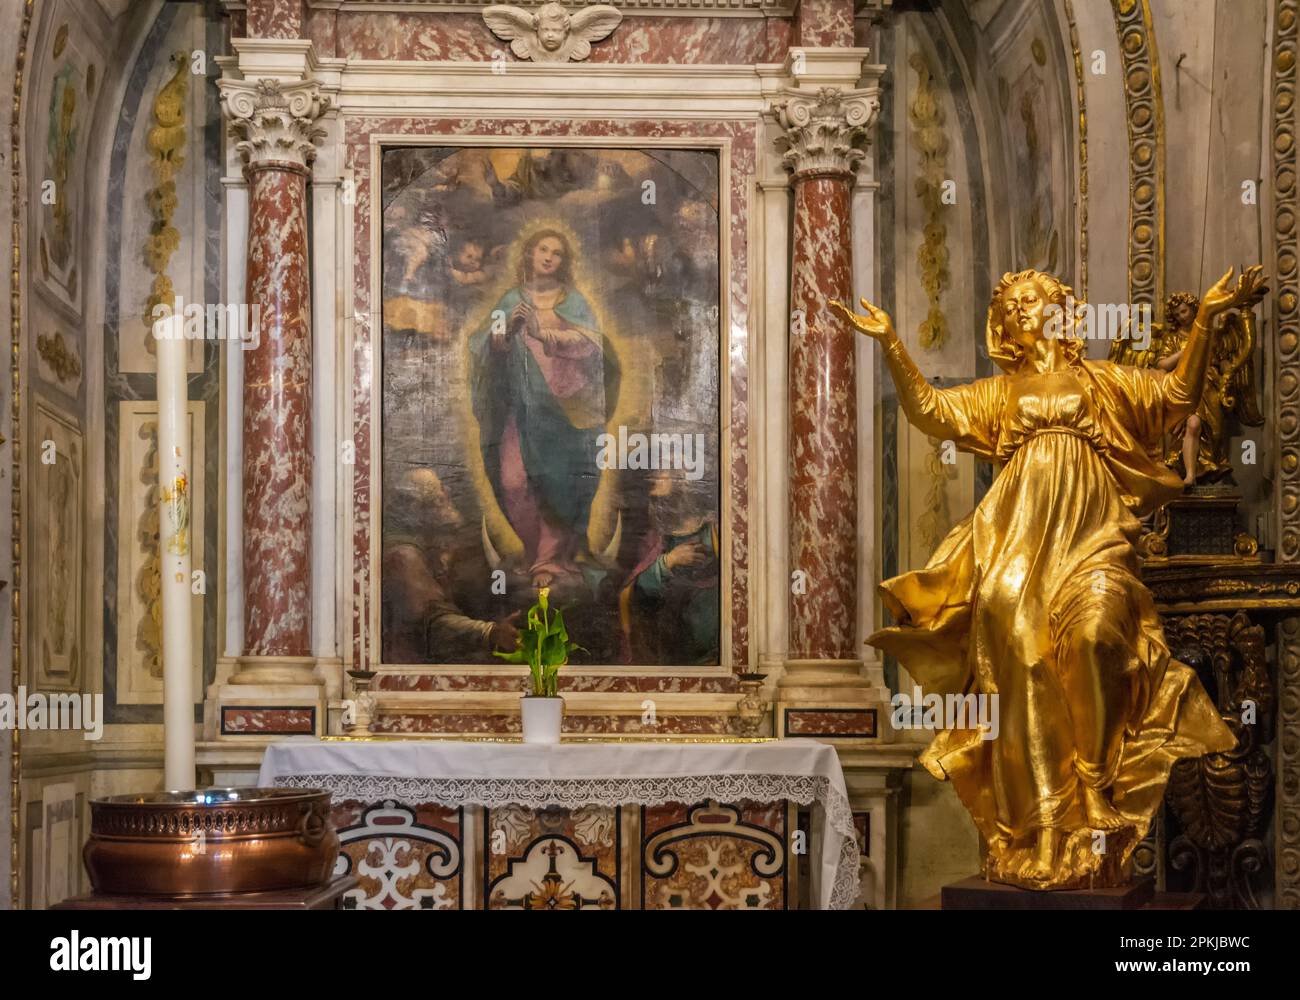 Collégiale de Santa Maria Assunta, San Gimignano - sculptures et fresques à l'intérieur de l'église . Province de Sienne, Toscane, Italie, Europe - juin Banque D'Images